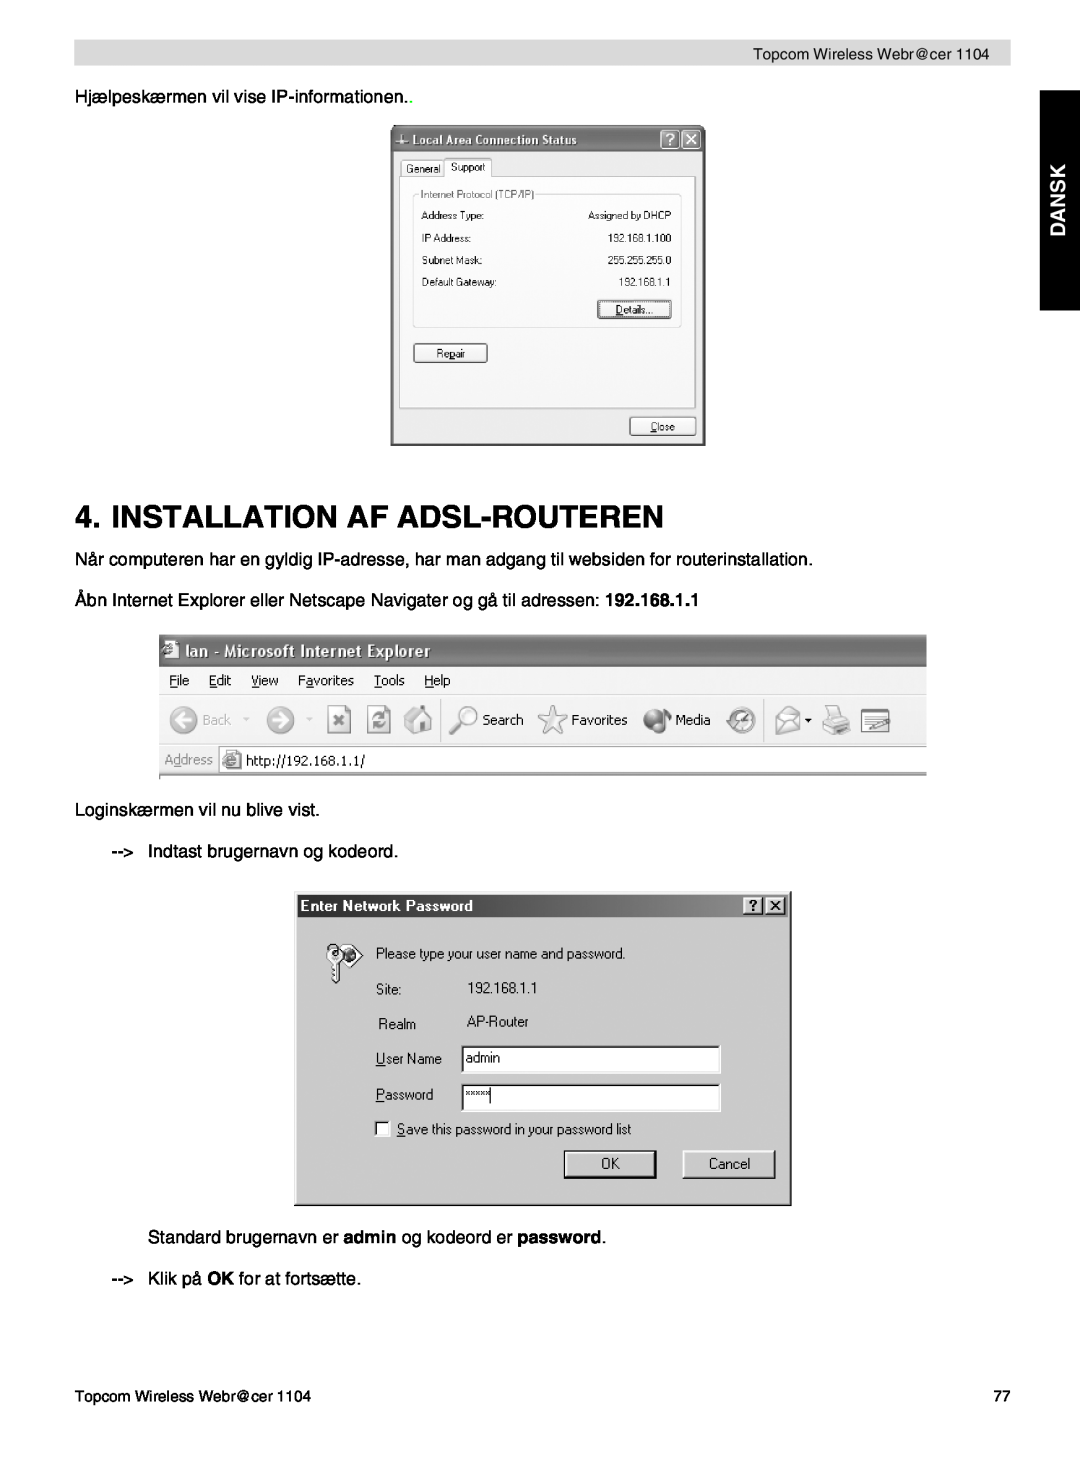 Topcom 1104 manual do utilizador Installation Af Adsl-Routeren, Dansk 